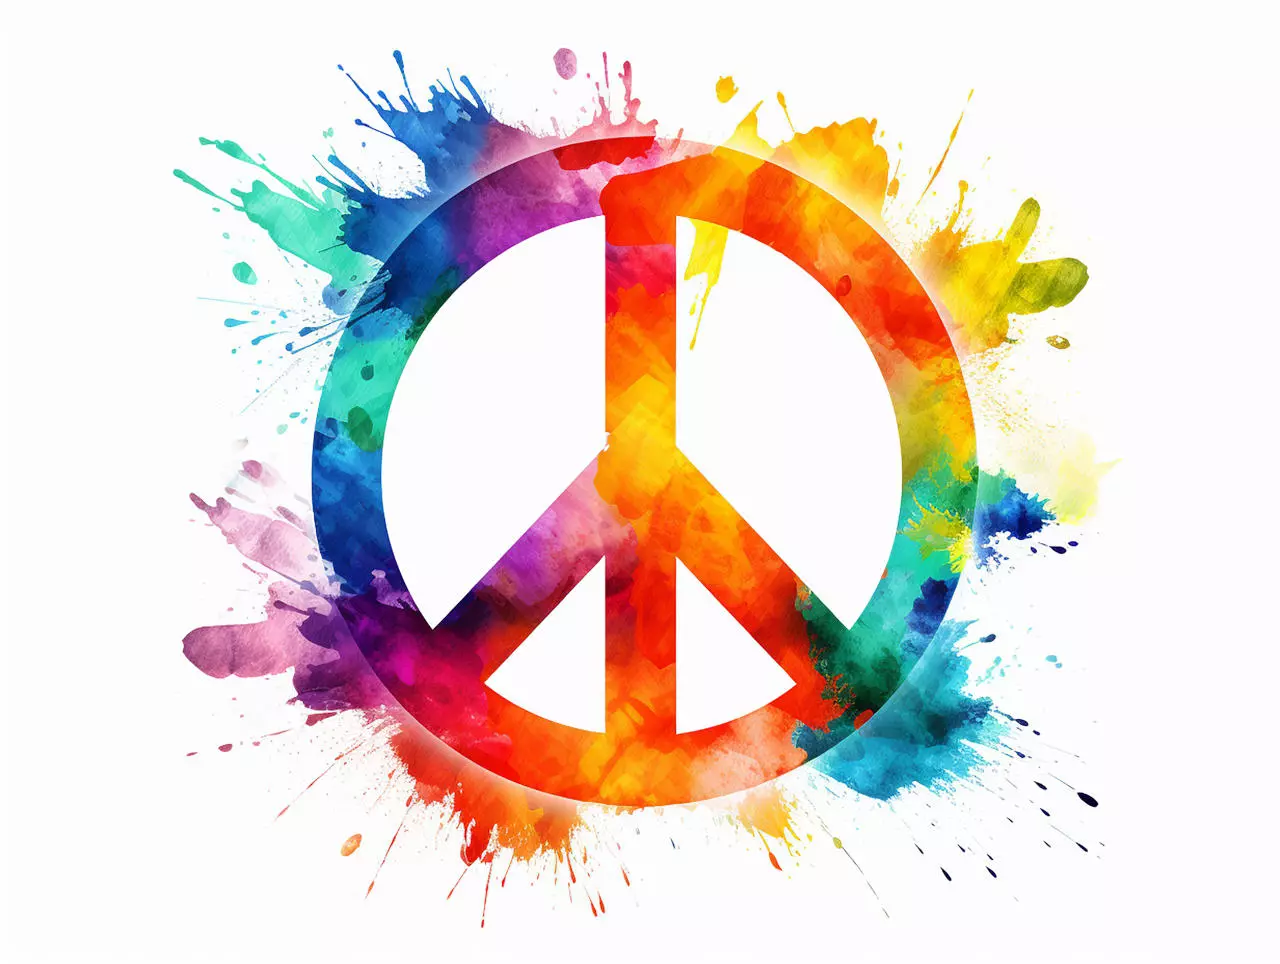 Peace-Zeichen in leuchtenden Regenbogenfarben mit nach außen verwischten Rändern auf weißem Hintergrund, ein starkes Symbol für Frieden und Diversität, angeboten bei flaggenmeer